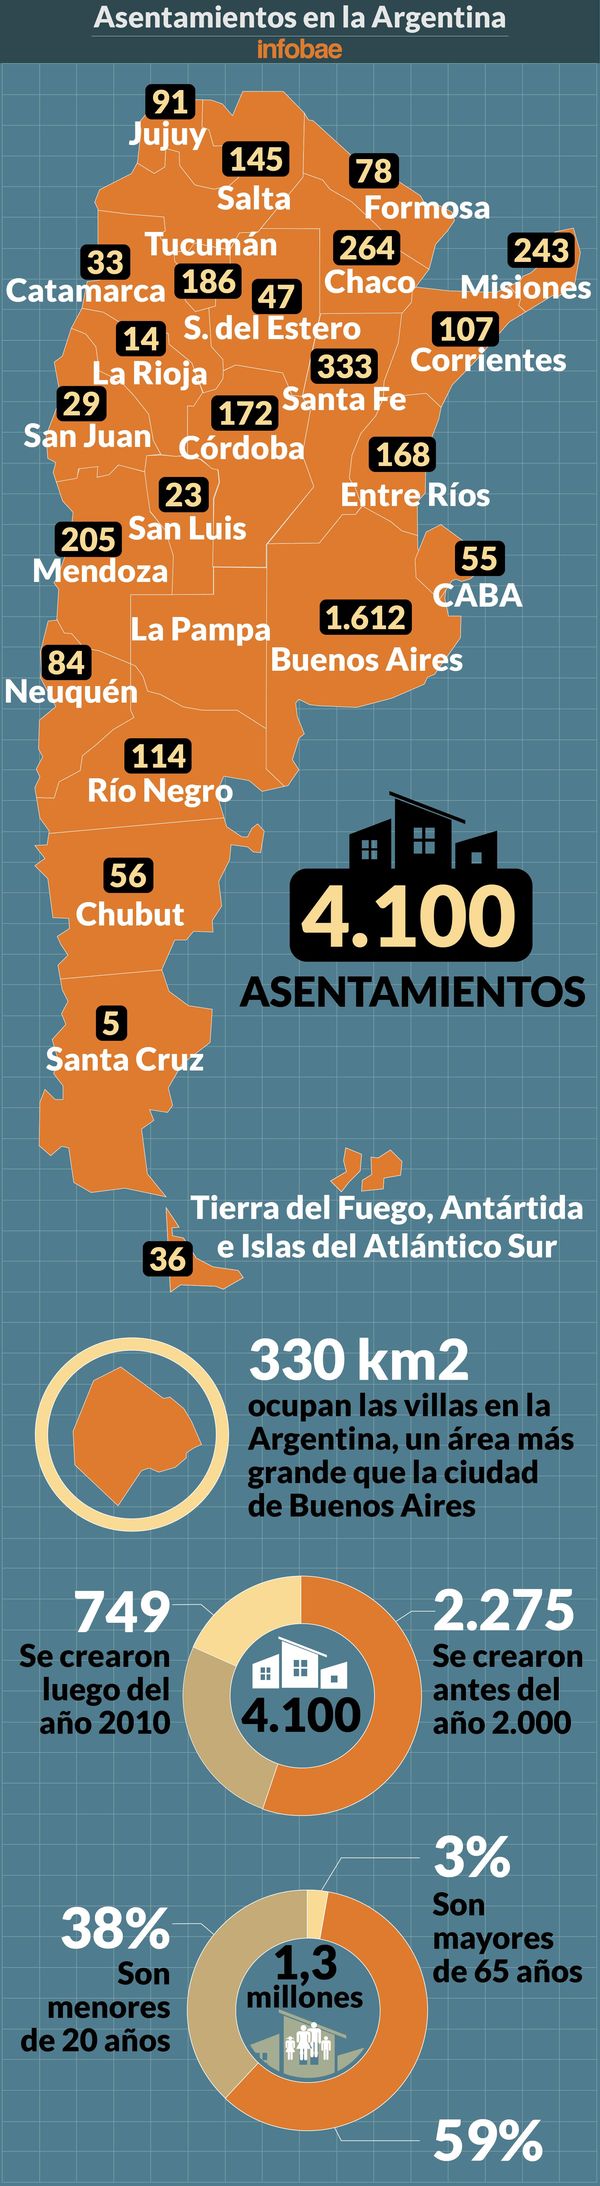 nuevas-Infografia-asentamientos-en-Argentina-2